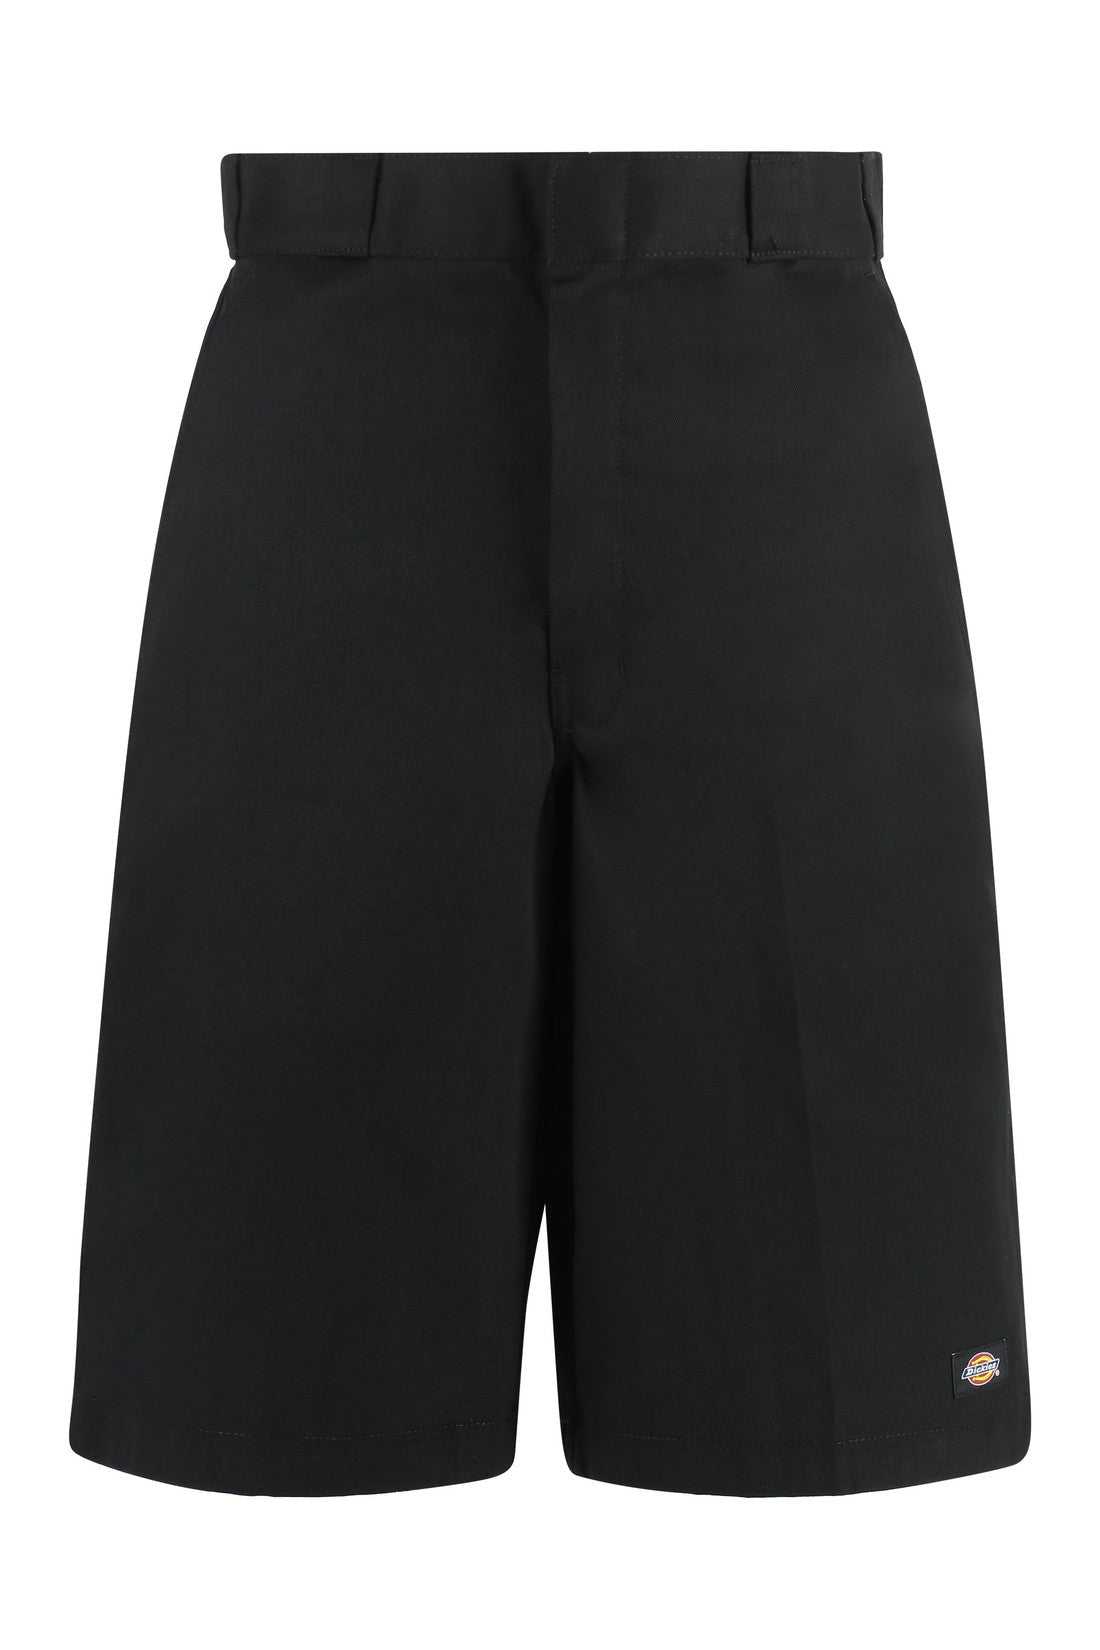 Dickies-OUTLET-SALE-Cotton blend shorts-ARCHIVIST